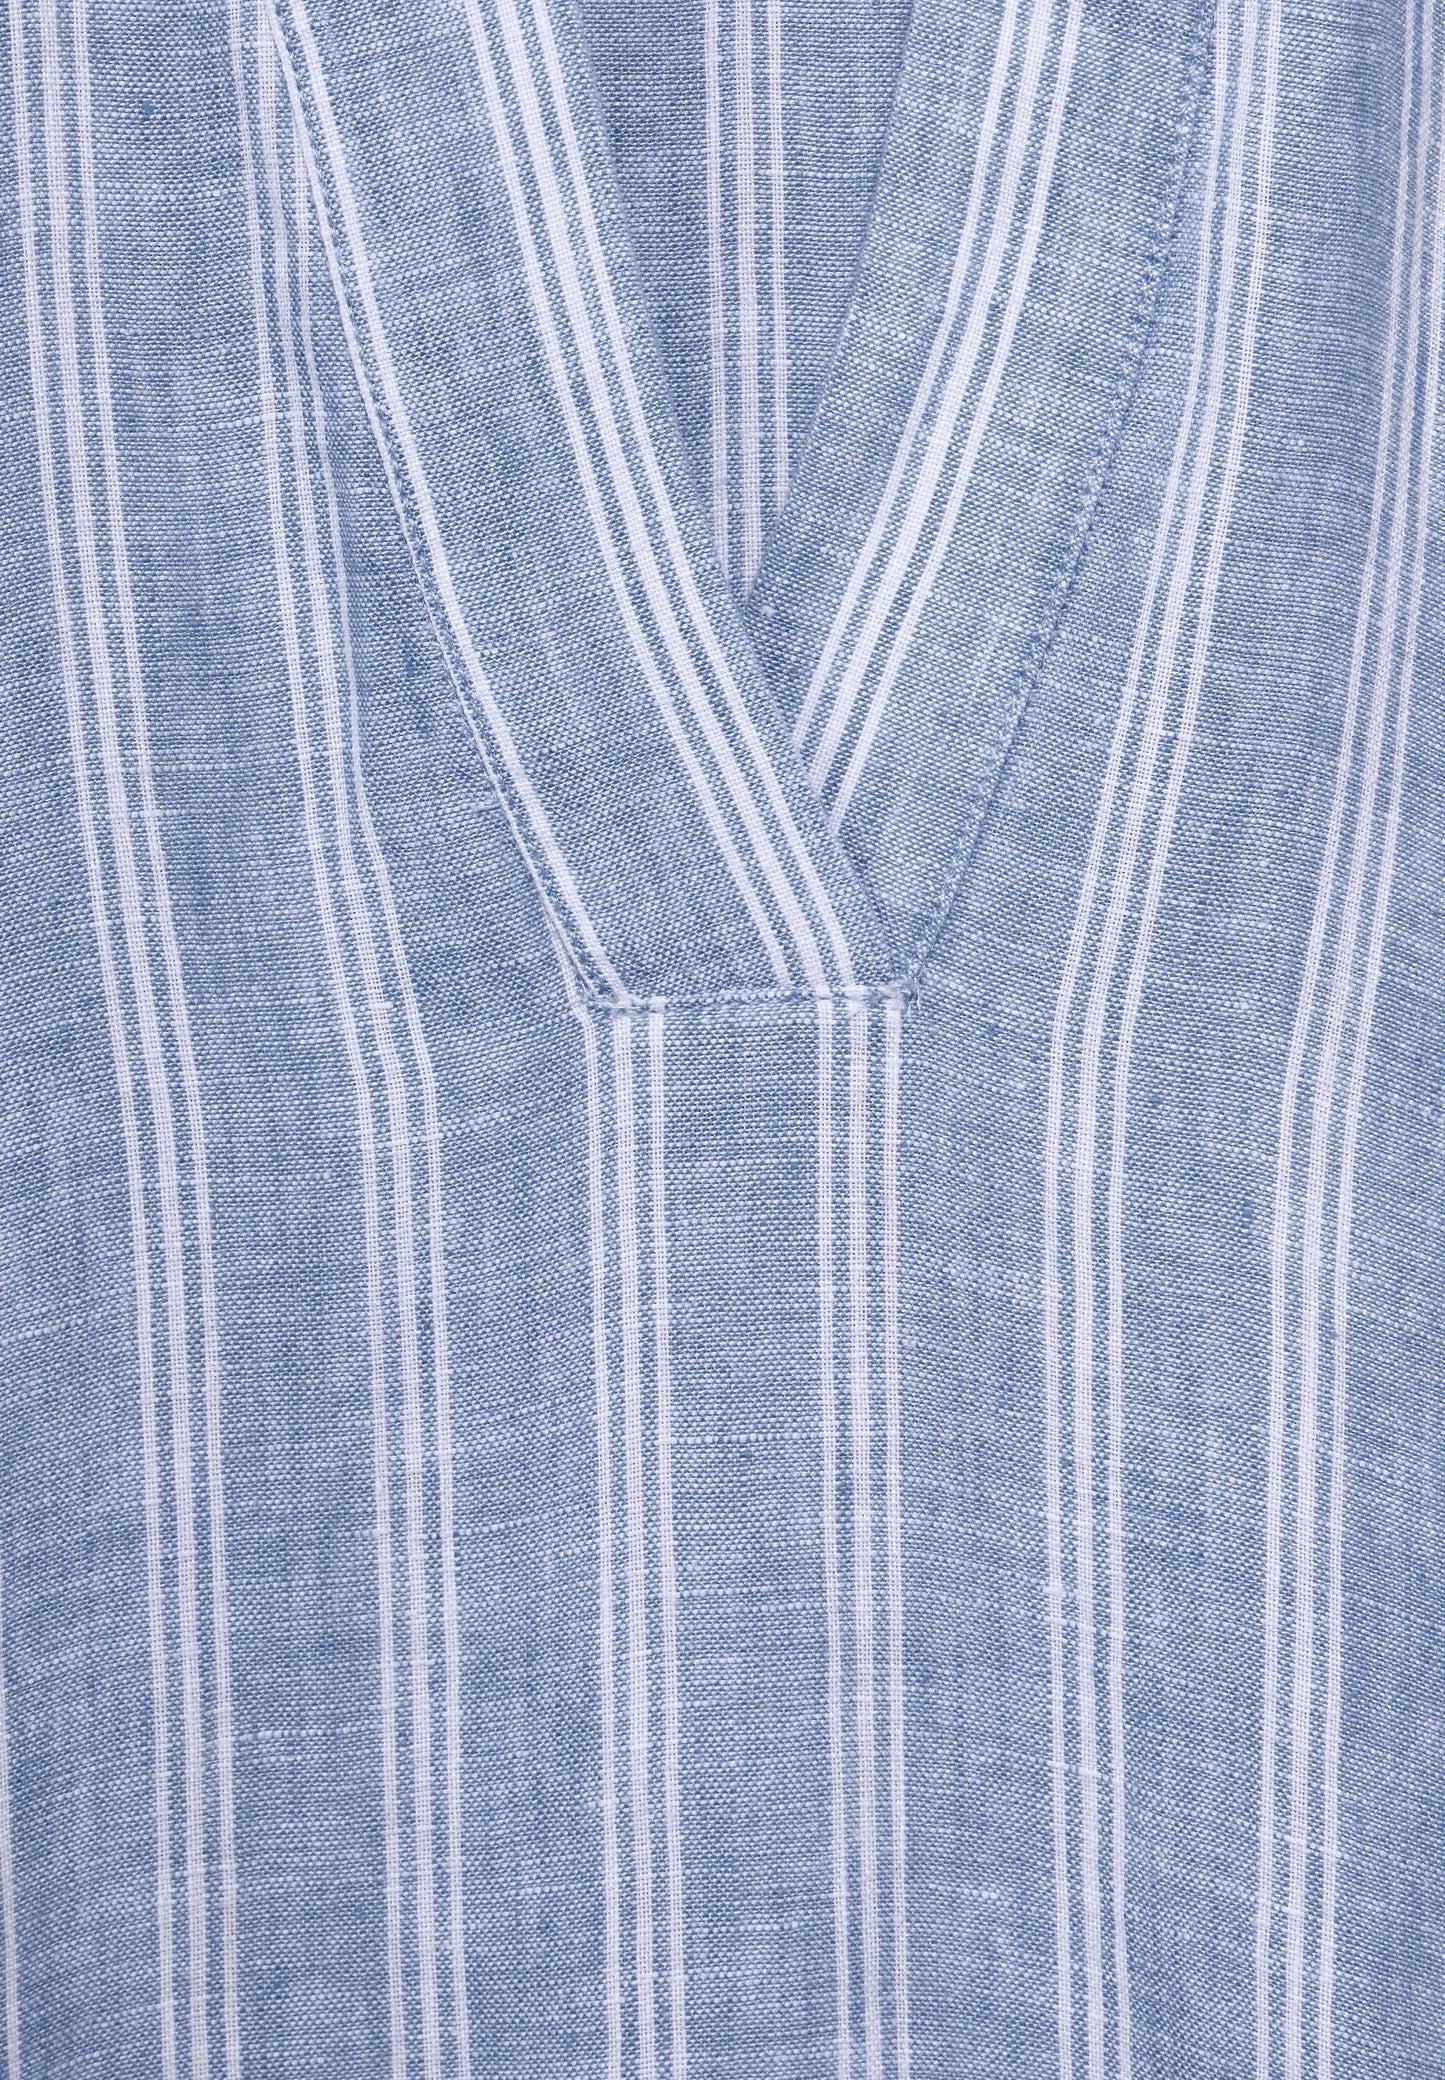 CECIL - Leinenkleid mit Streifen - blau